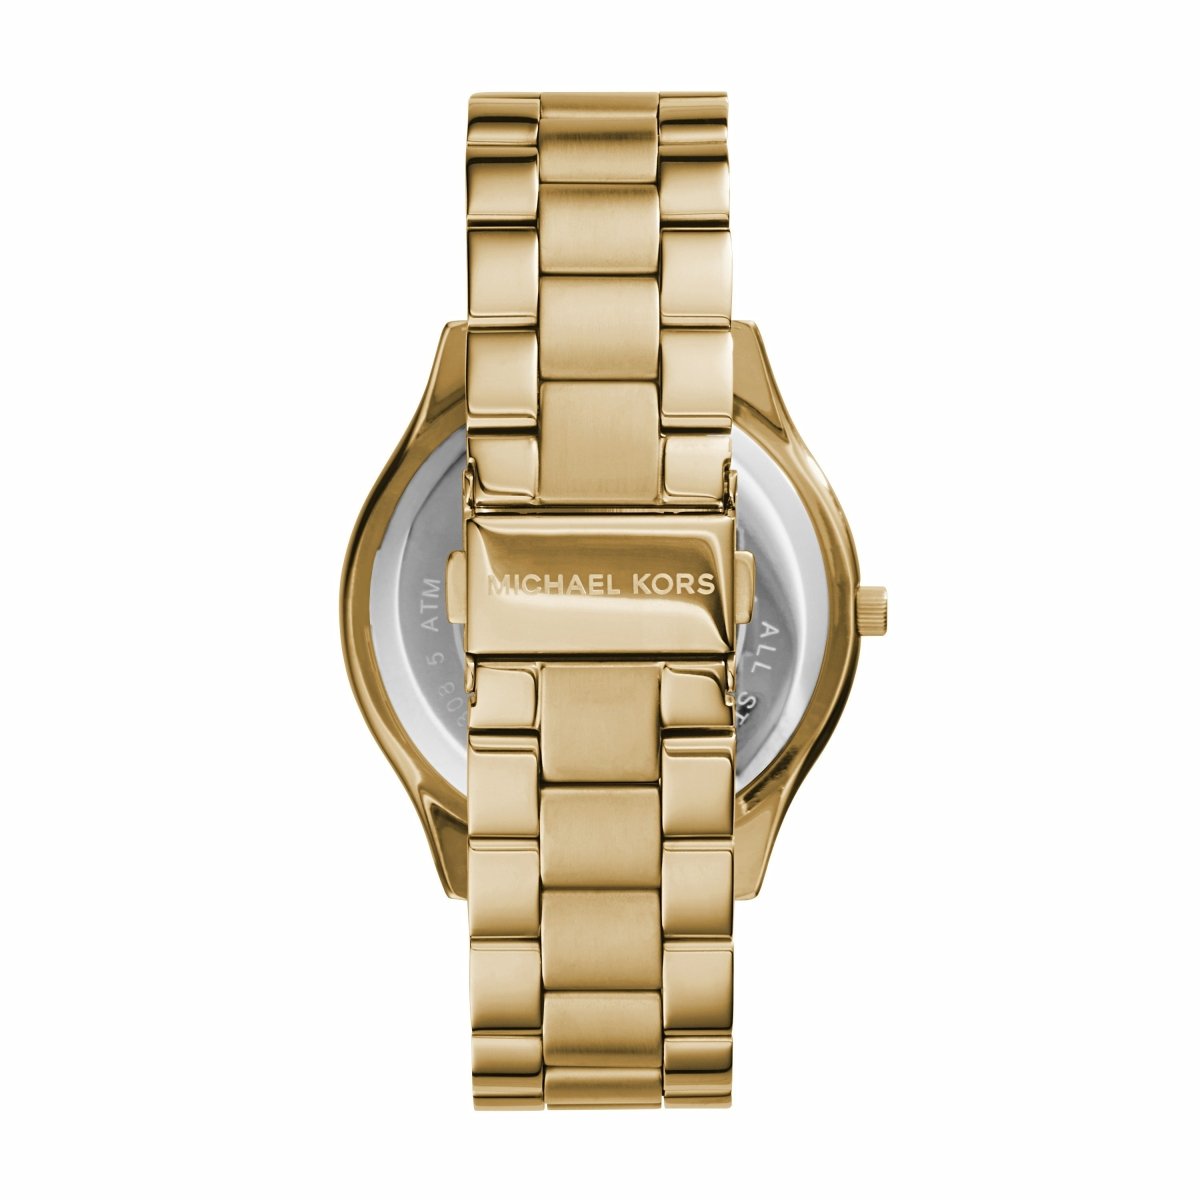 Michael Kors MK3179 Slim Runway Gold Stainless Steel Watch - Κοσμηματοπωλείο Goldy